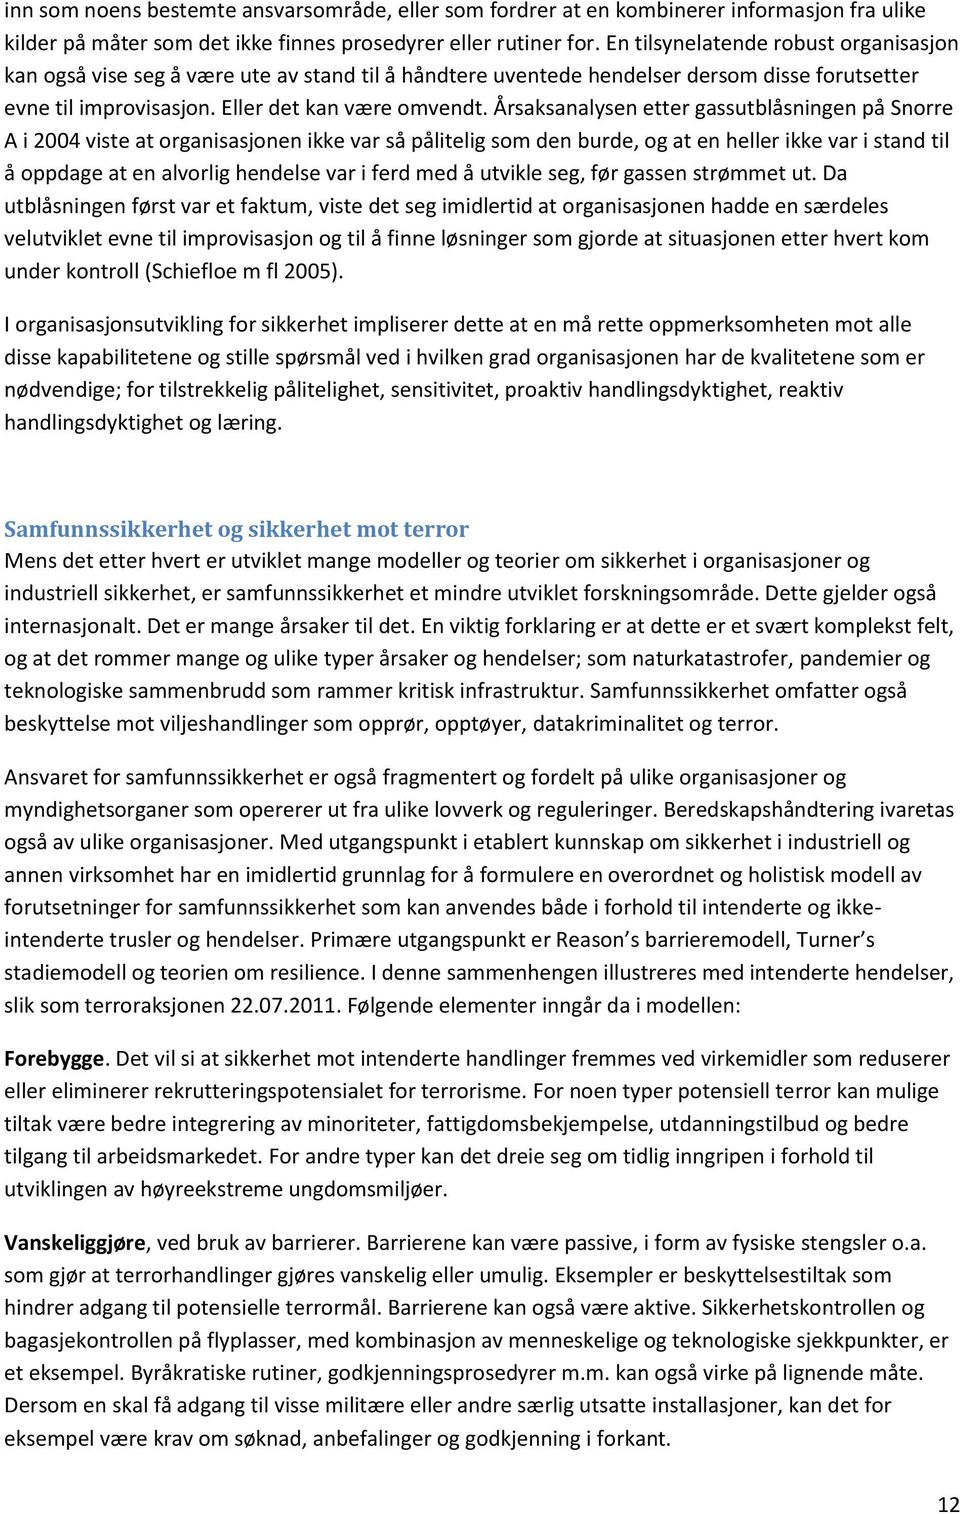 Årsaksanalysen etter gassutblåsningen på Snorre A i 2004 viste at organisasjonen ikke var så pålitelig som den burde, og at en heller ikke var i stand til å oppdage at en alvorlig hendelse var i ferd